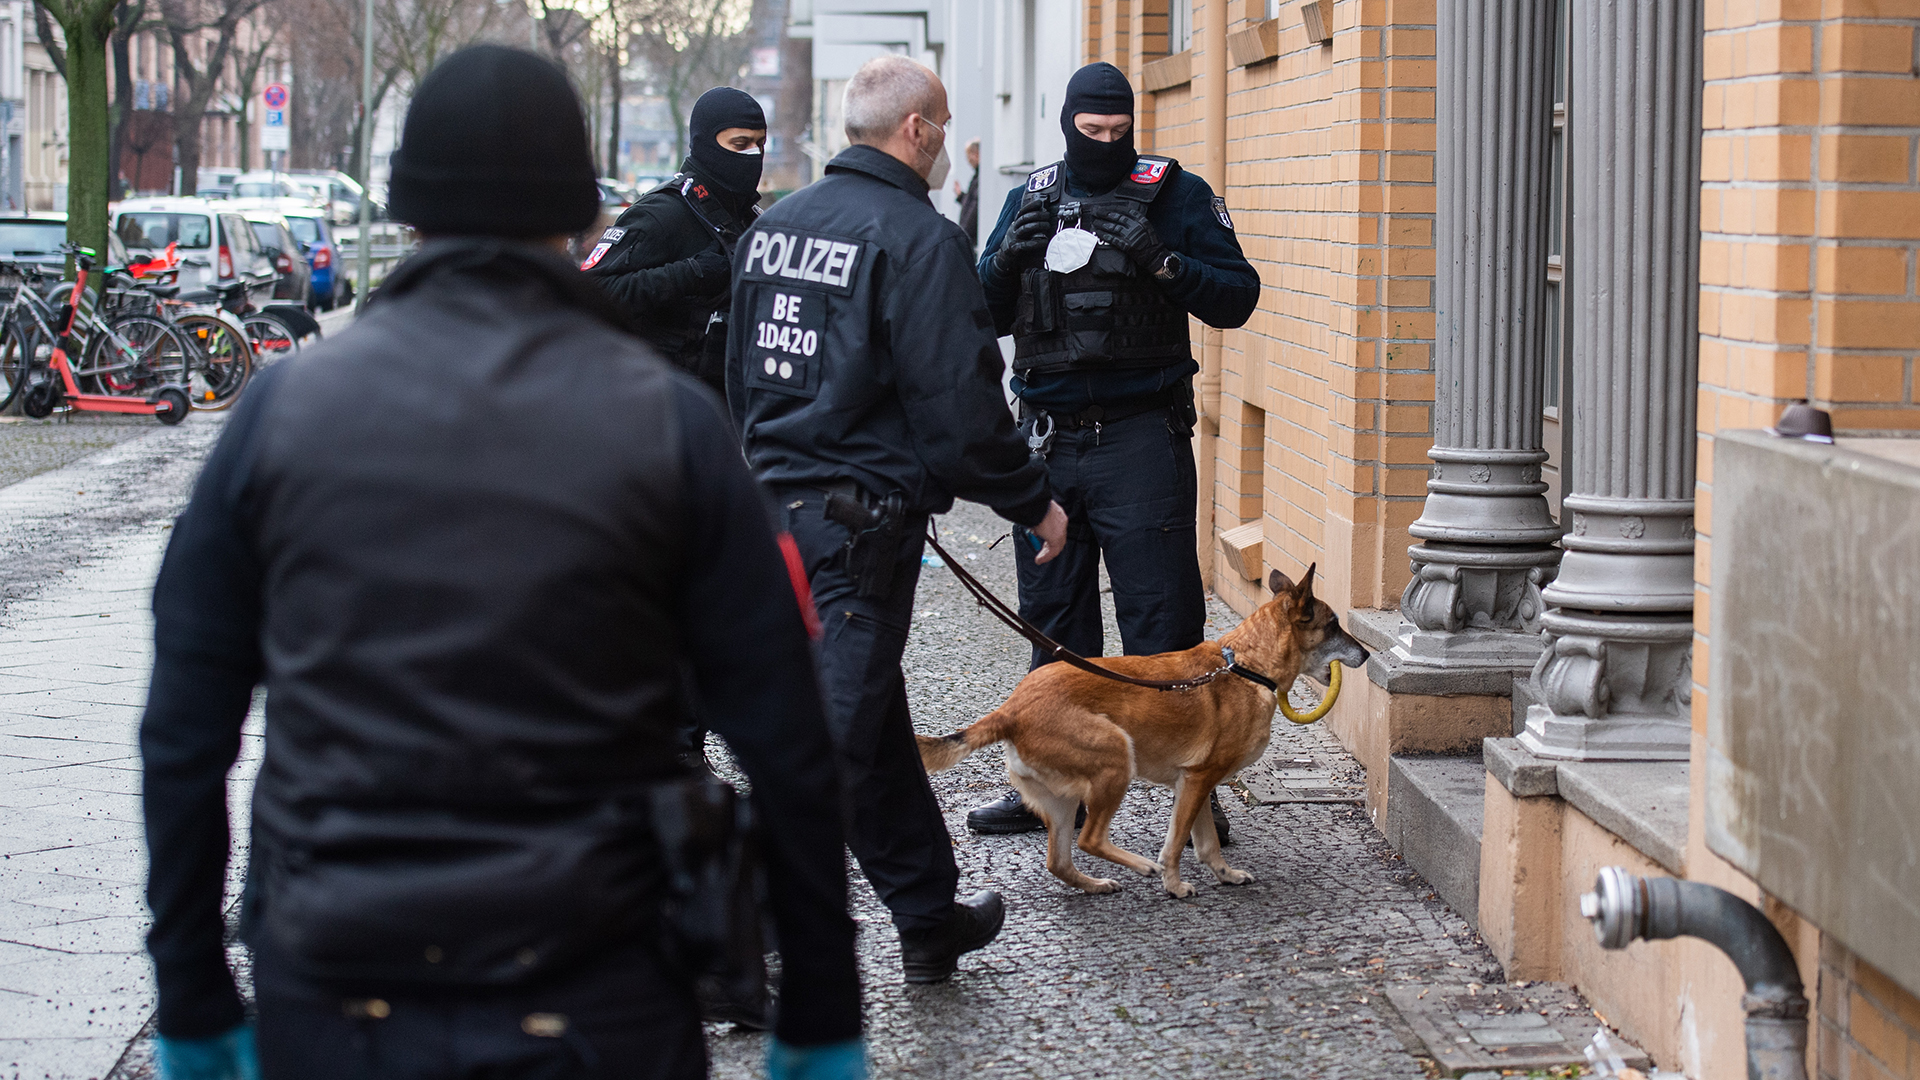  Polizisten gehen bei einer Razzia mit einem Hund in ein Haus. | picture alliance/dpa